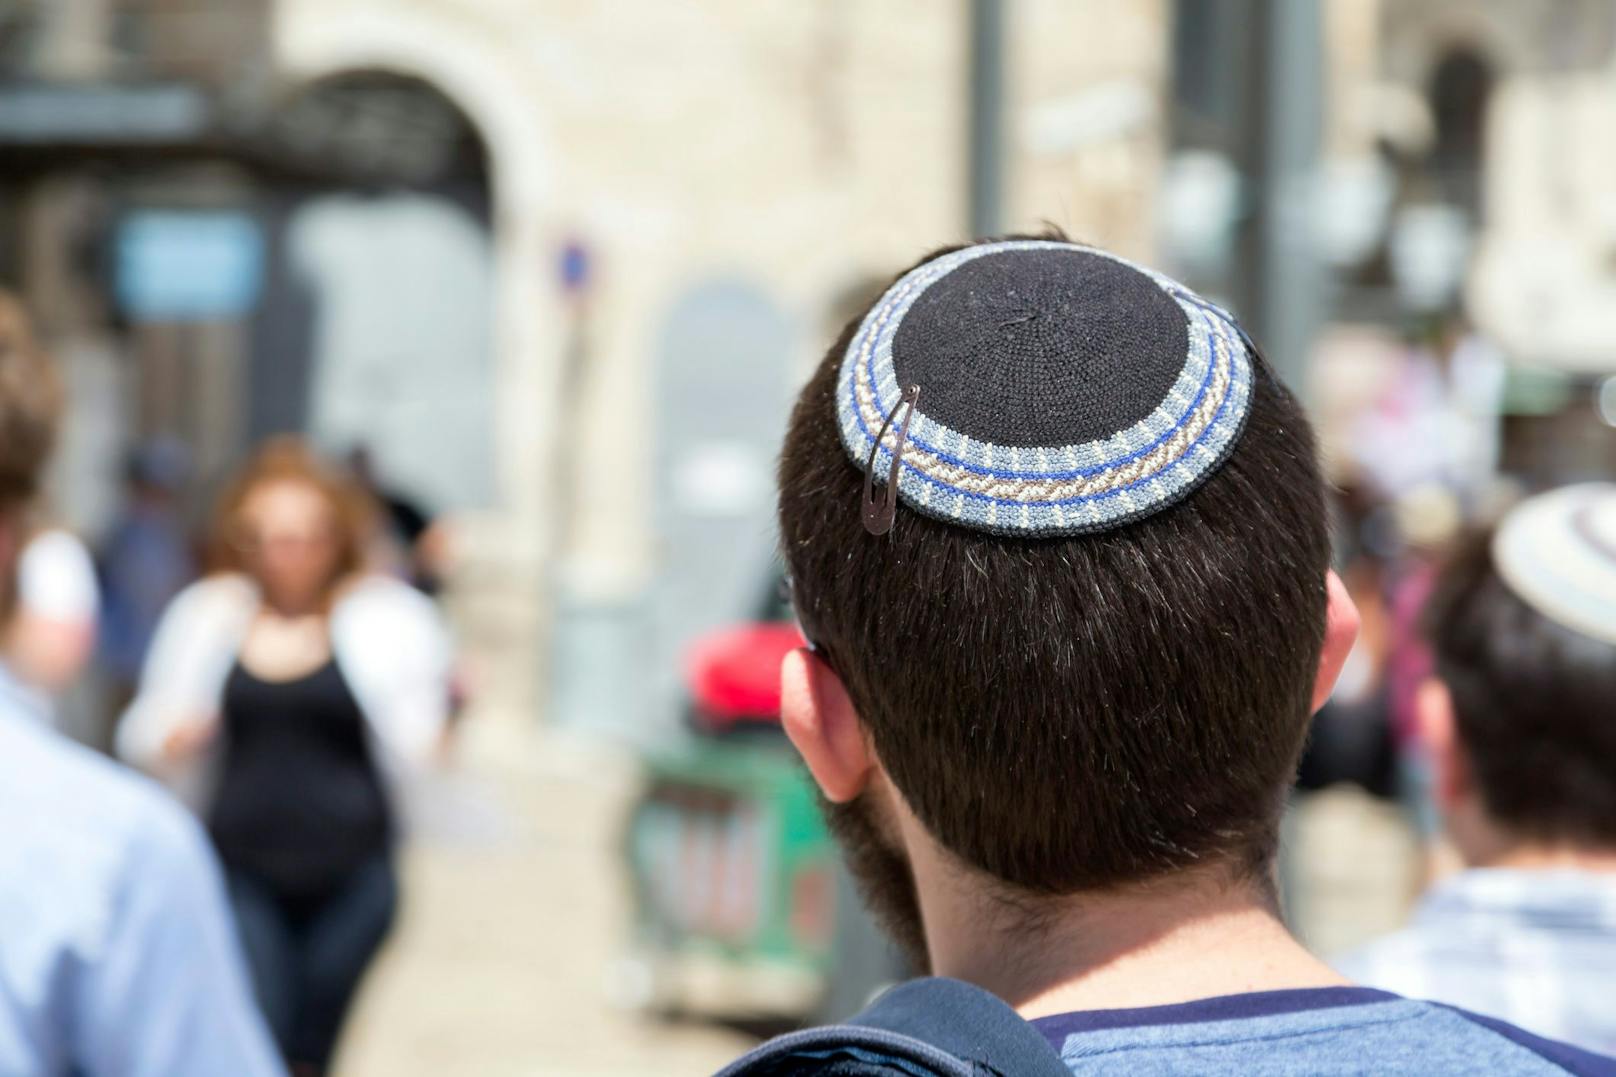 Wegen seiner religiösen Kopfbedeckung wurde ein Jugendlicher in Köln attackiert. Symbolbild